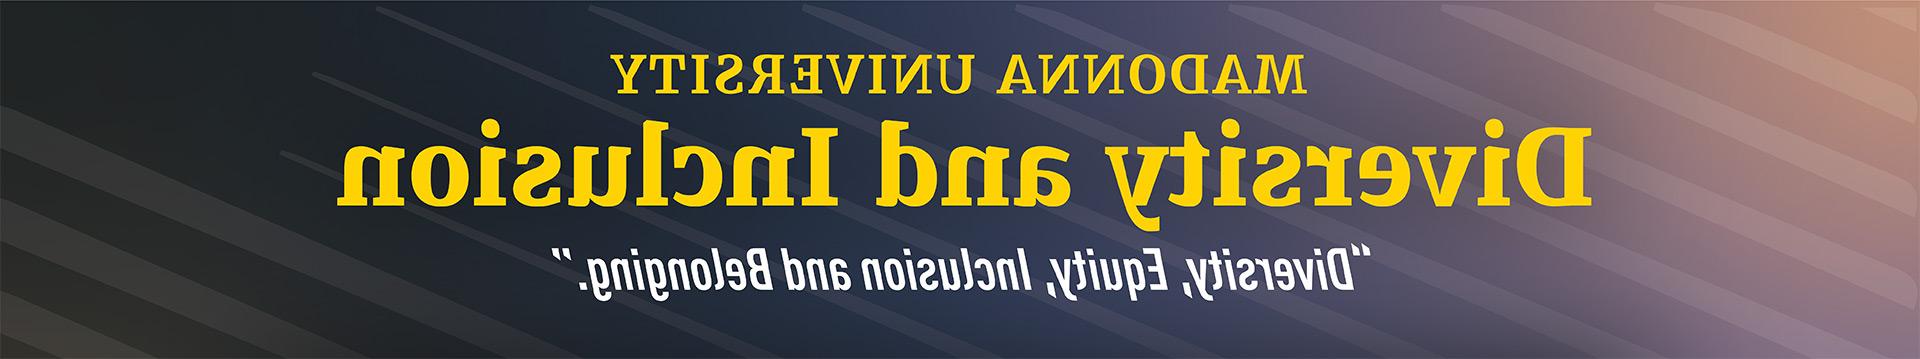 多样性 和 包容 banner image with the quoted subtitle "多样性, 股本, 包容 和 Belonging"